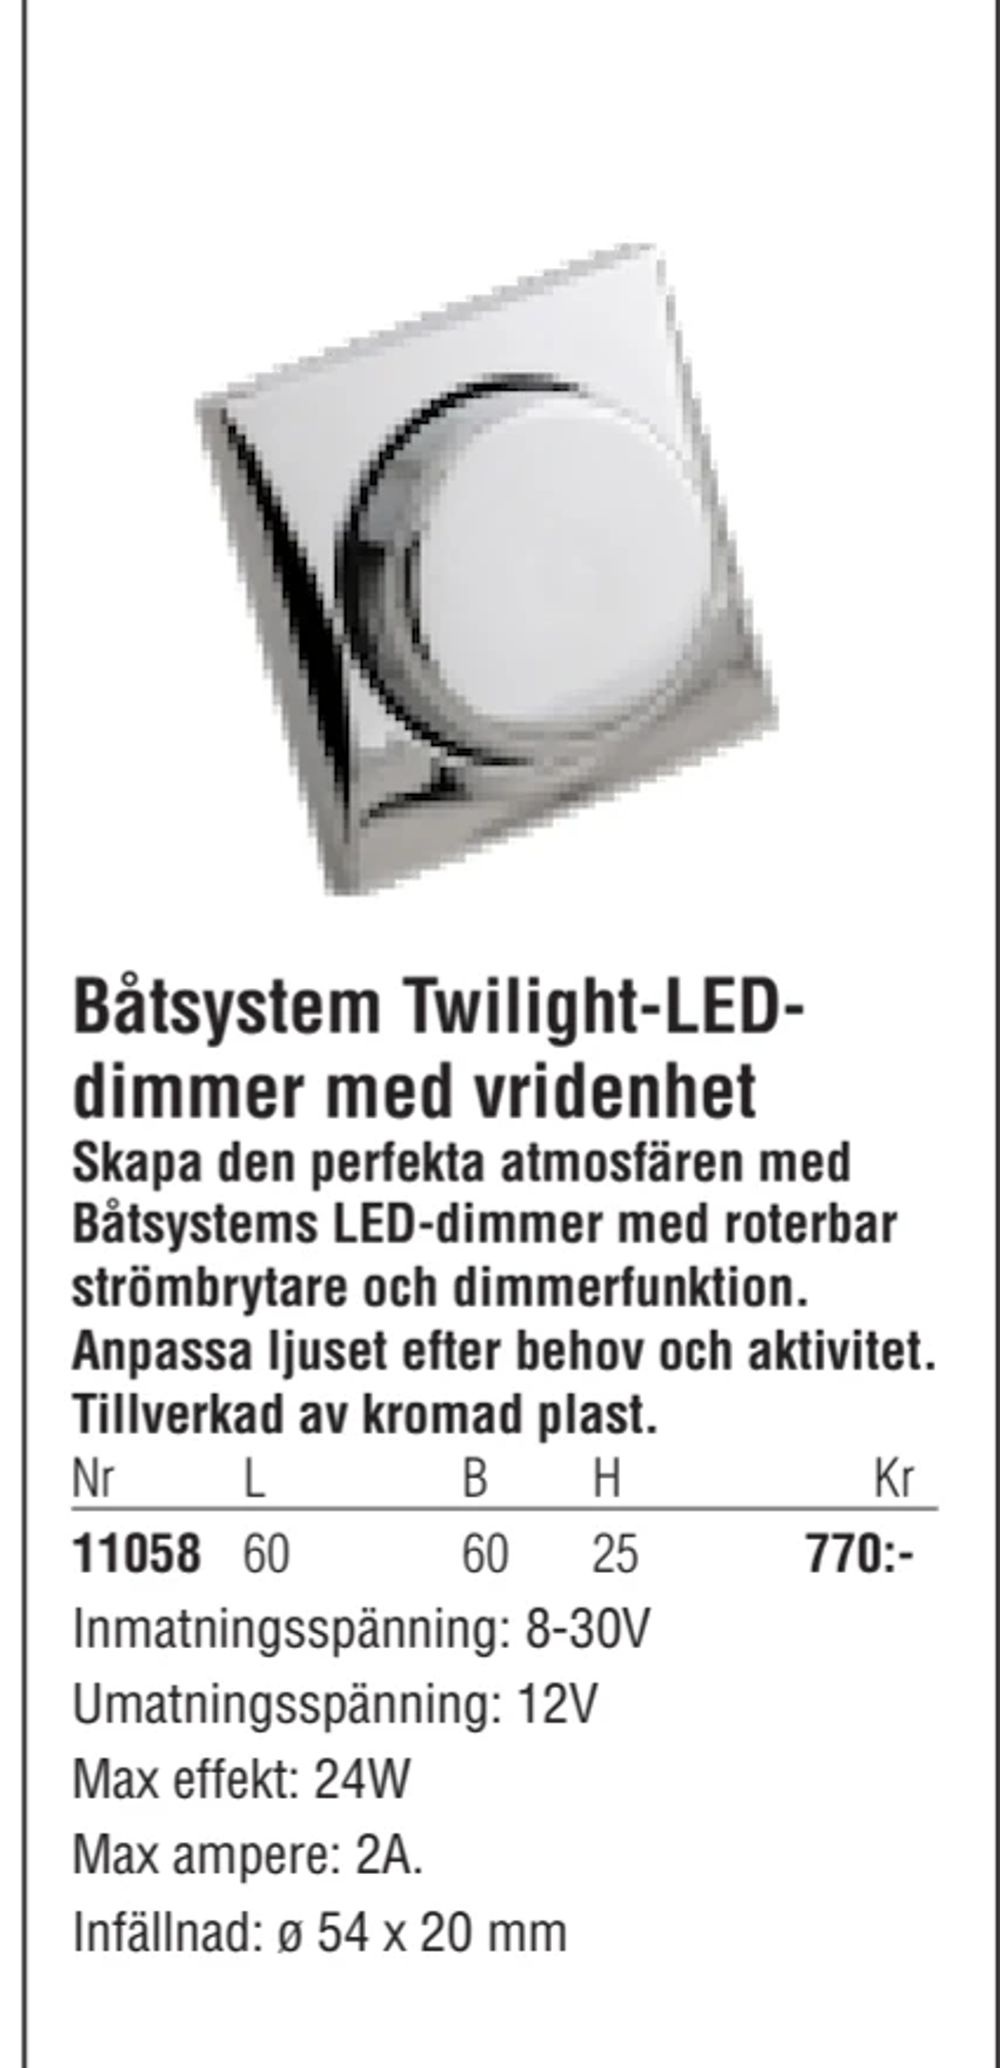 Erbjudanden på Båtsystem Twilight-LEDdimmer med vridenhet från Erlandsons Brygga för 770 kr